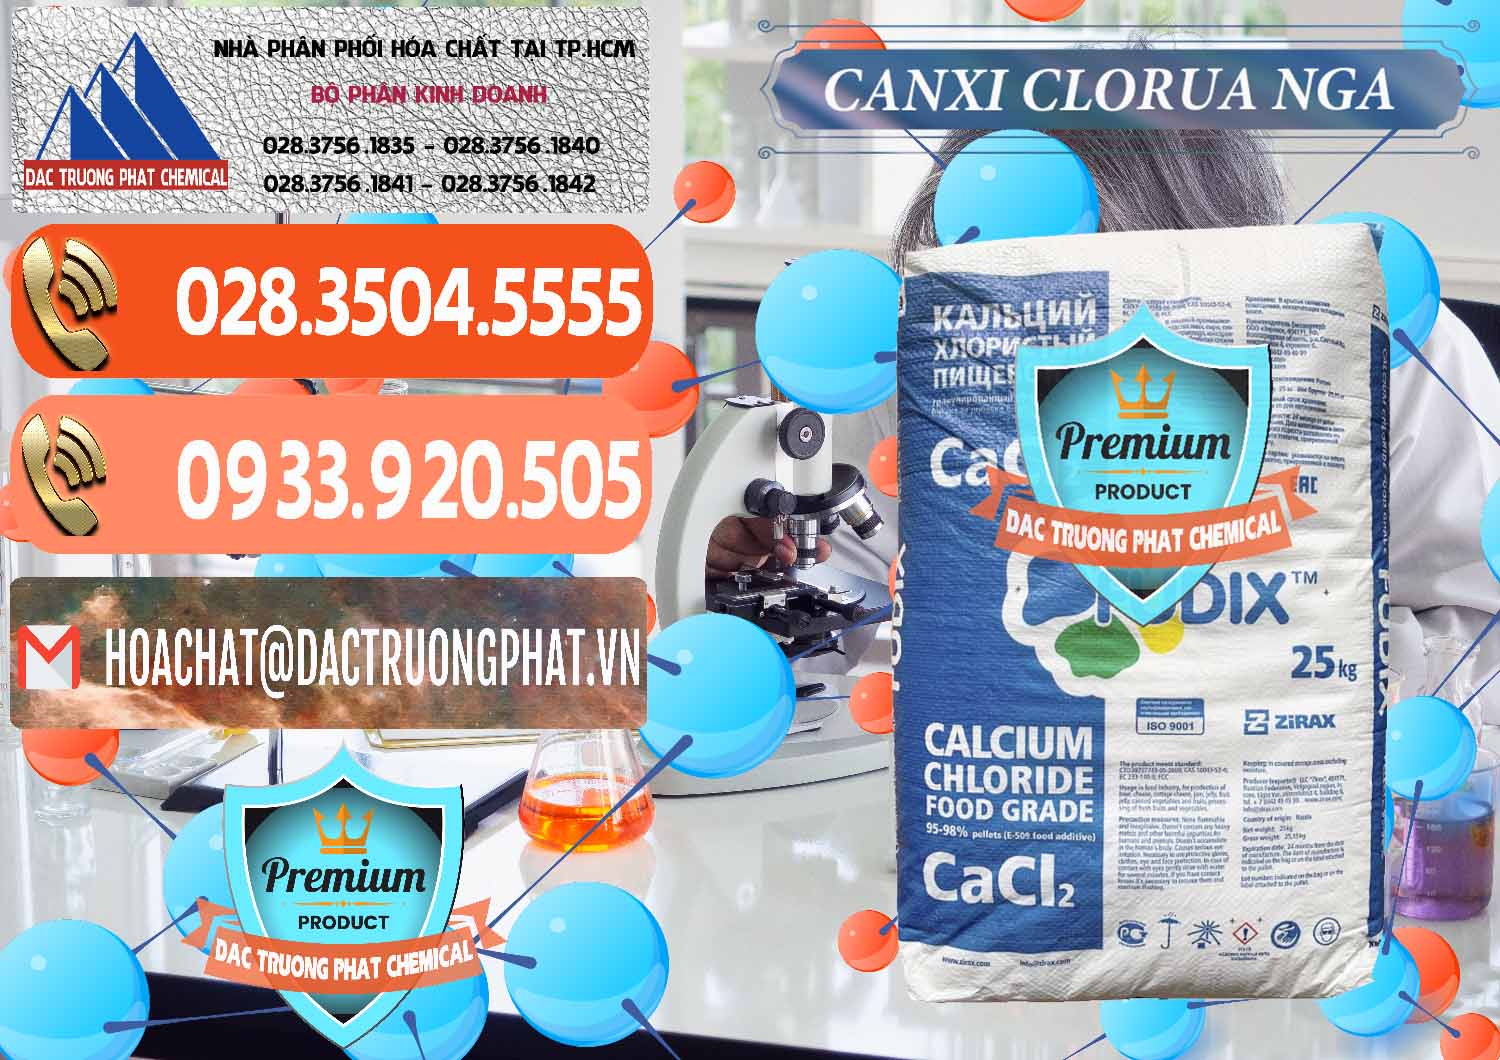 Nơi cung cấp & bán CaCl2 – Canxi Clorua Nga Russia - 0430 - Cung cấp & phân phối hóa chất tại TP.HCM - hoachatmientay.com